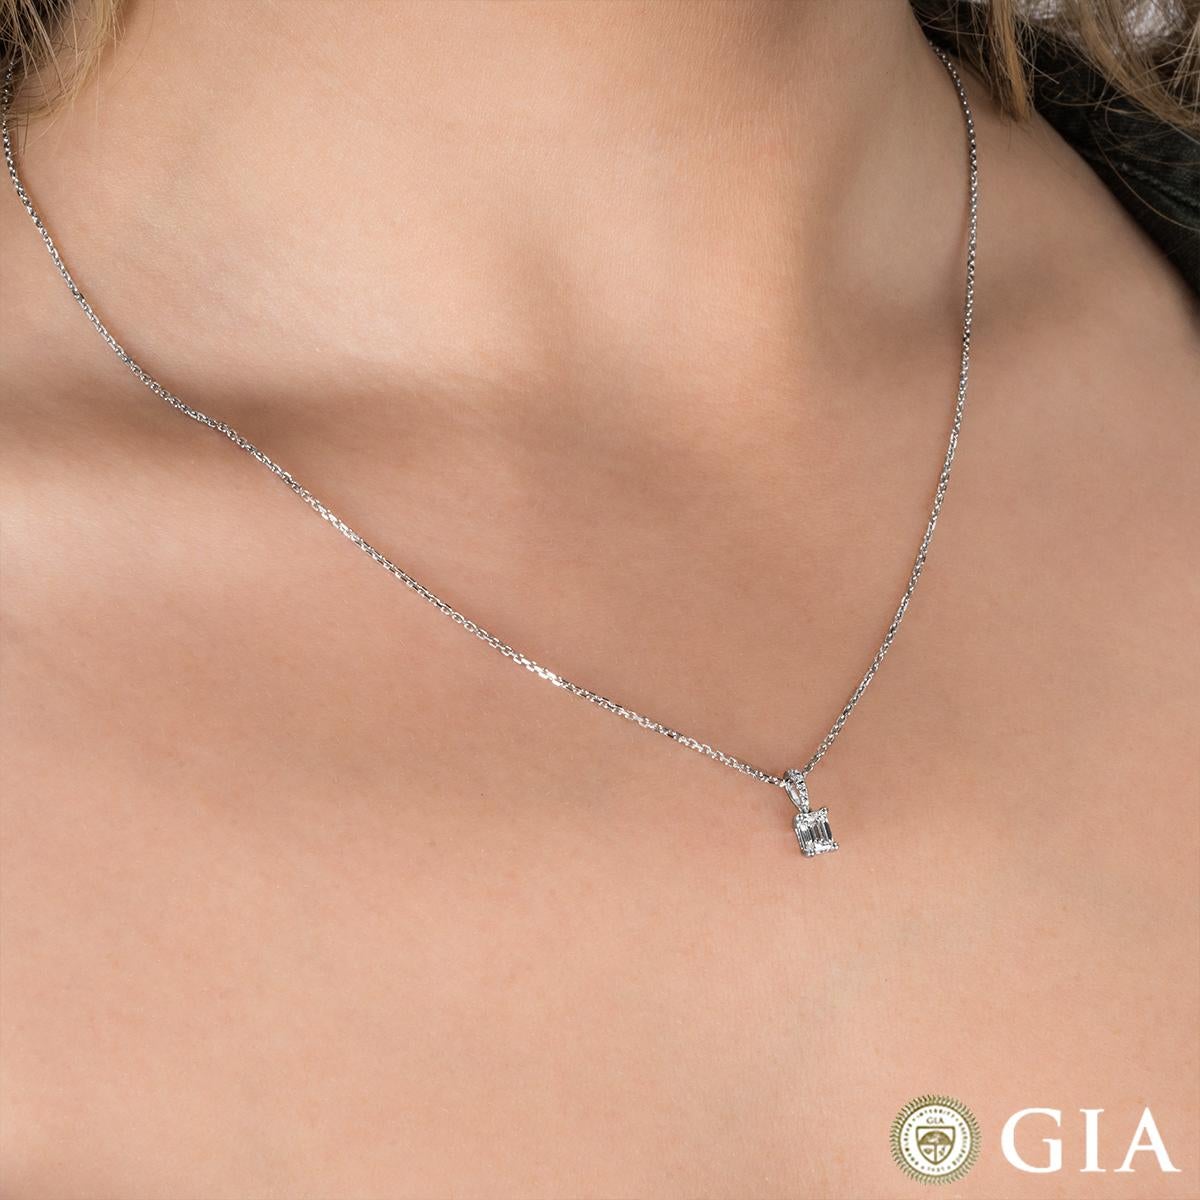 GIA Certified Emerald Cut Diamond Pendant 0.41 Carat E/SI1 For Sale 2